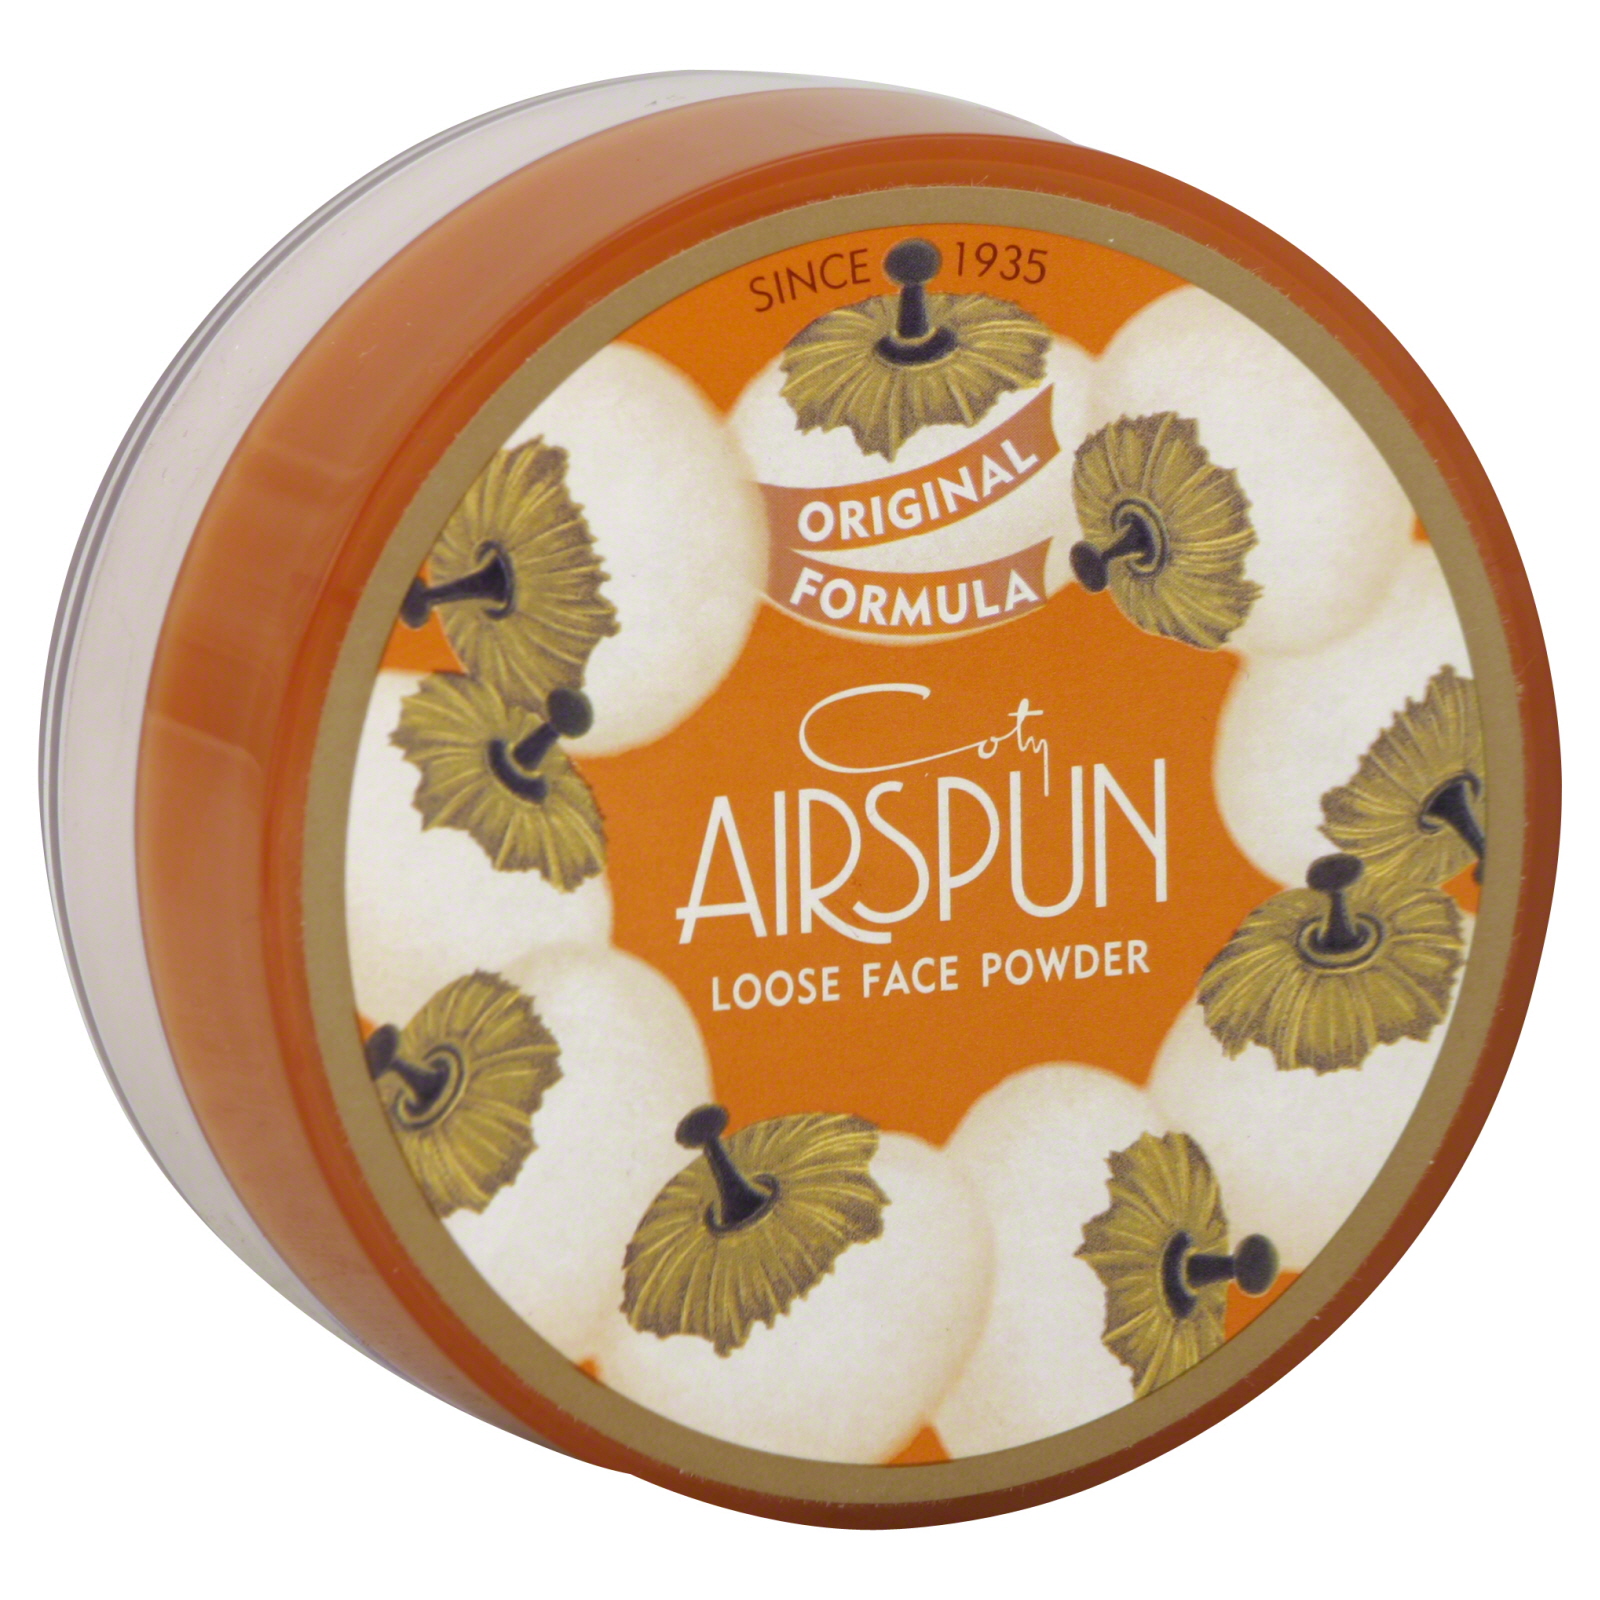 Coty Airspun Loose Face Powder, 2.3 oz